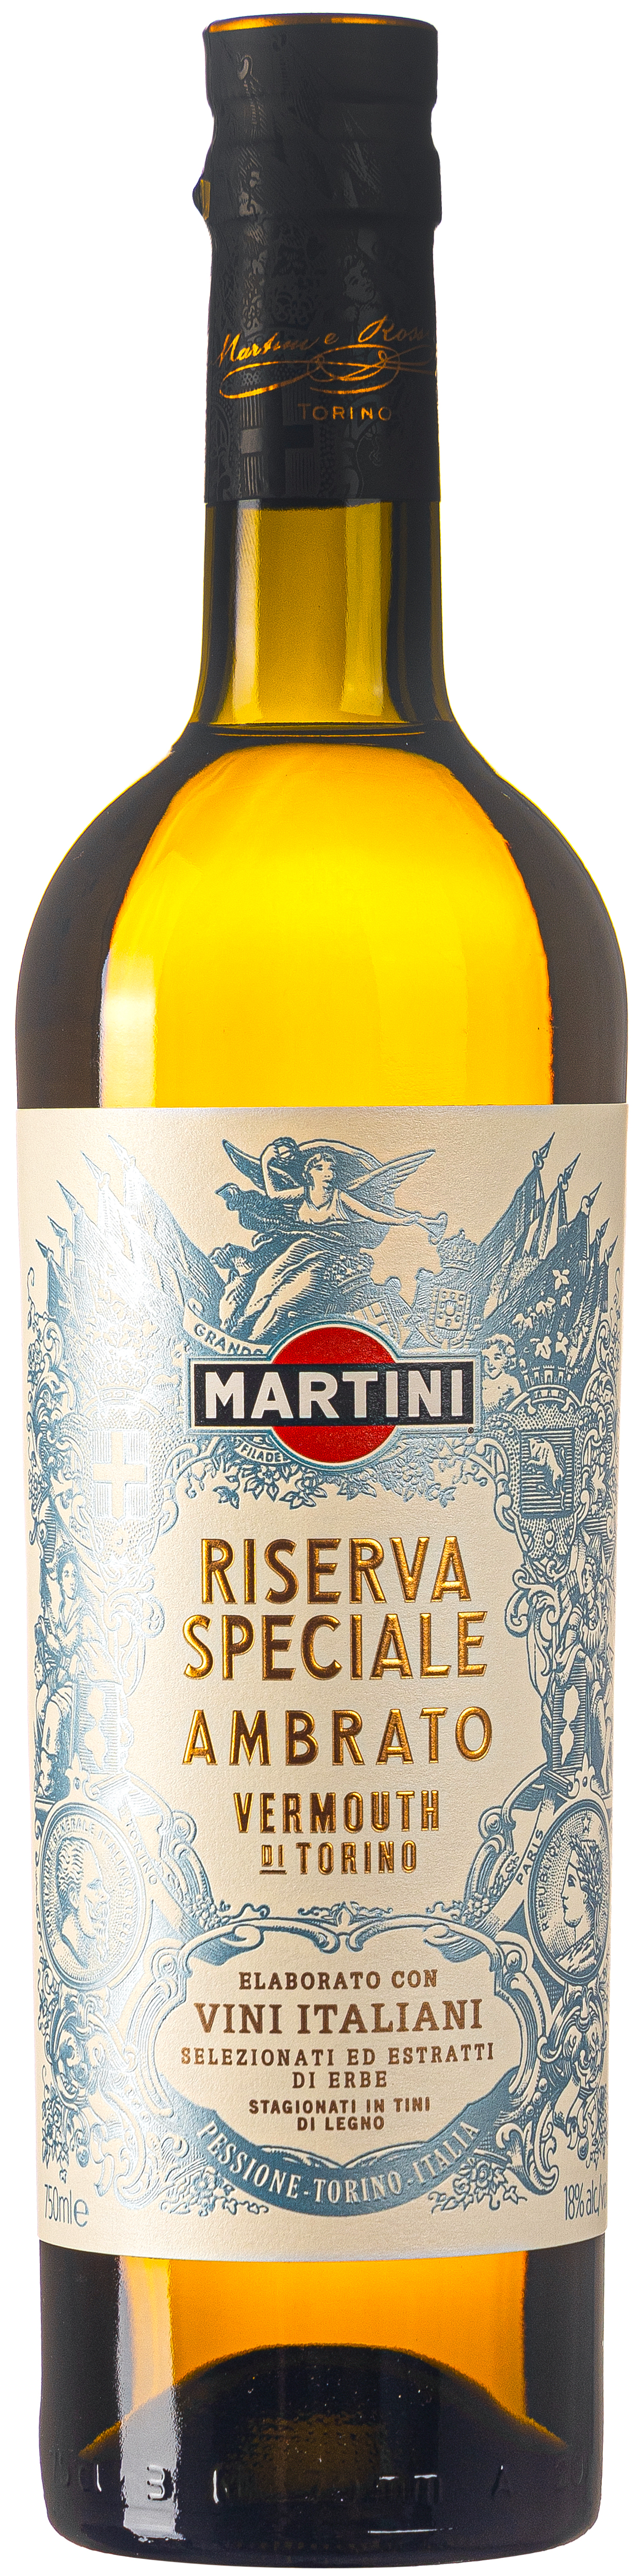 Martini Riserva Ambrato 18% vol. 0,75L   